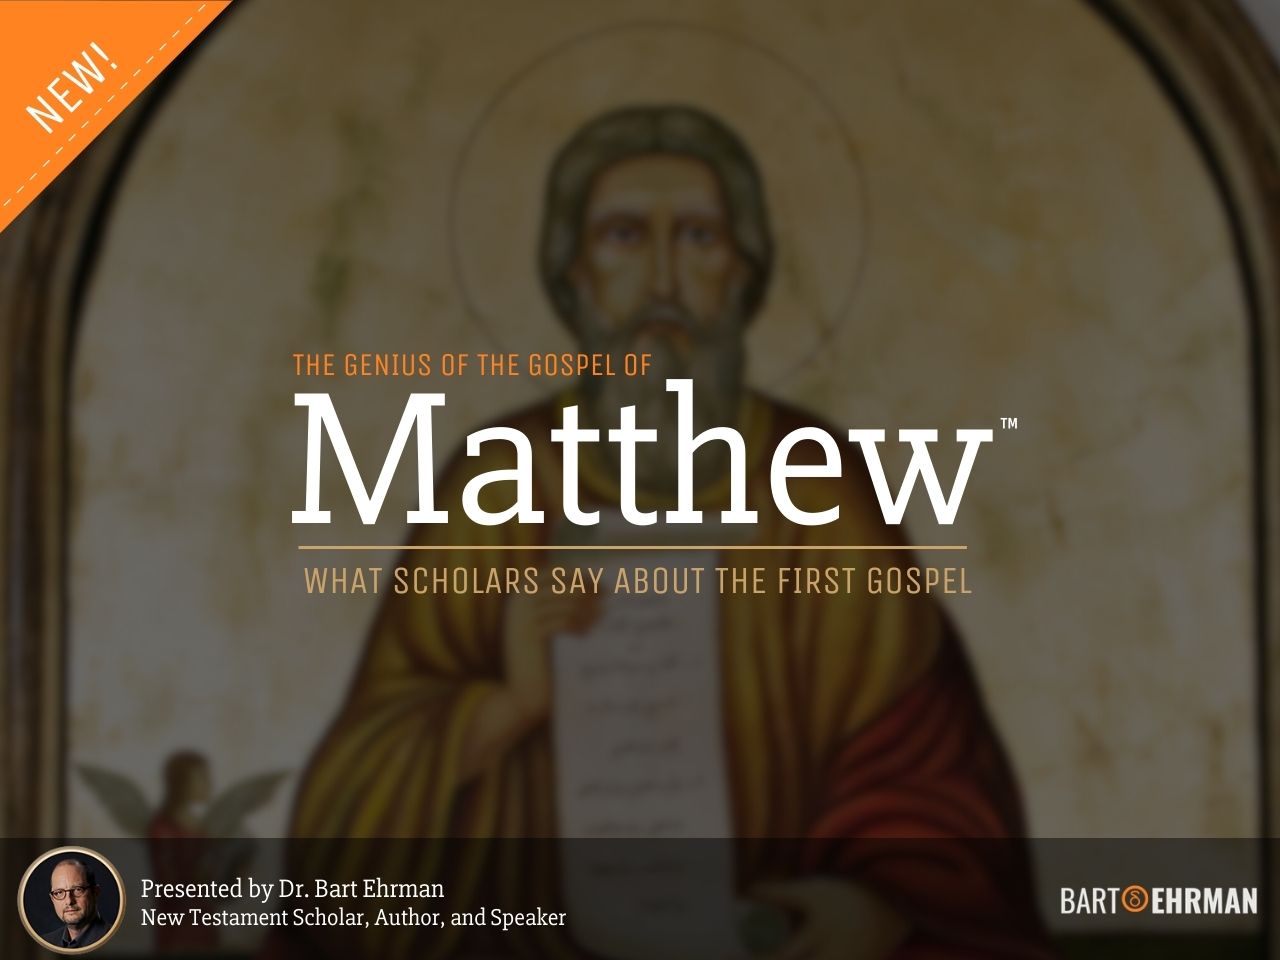 The Genius of the Gospel of Matthew by Bart Ehrman